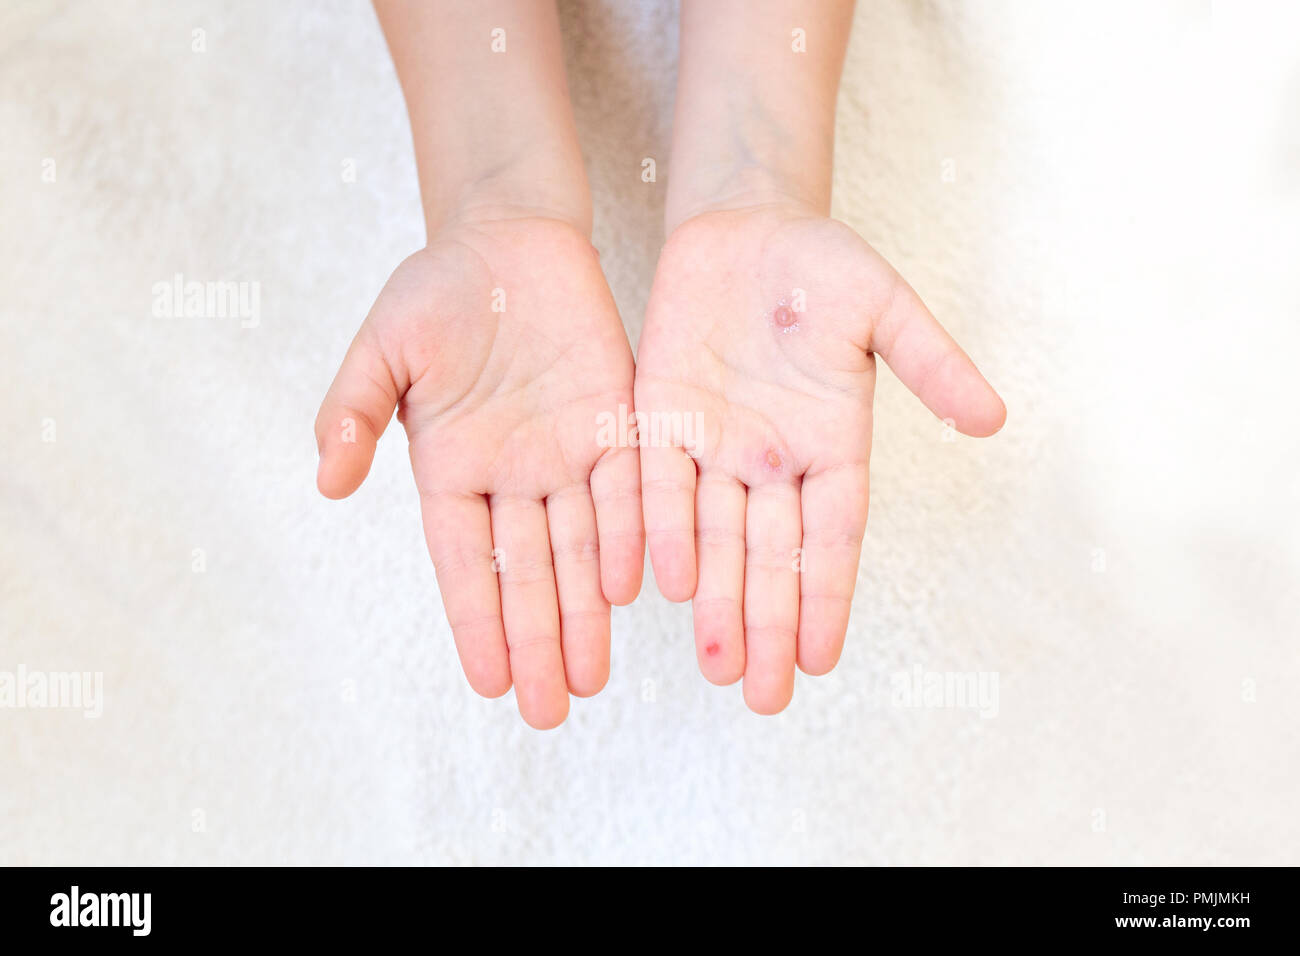 La mano di un bambino con la varicella in sua madre la mano. Le vesciche sulla mano da varicella. Foto Stock